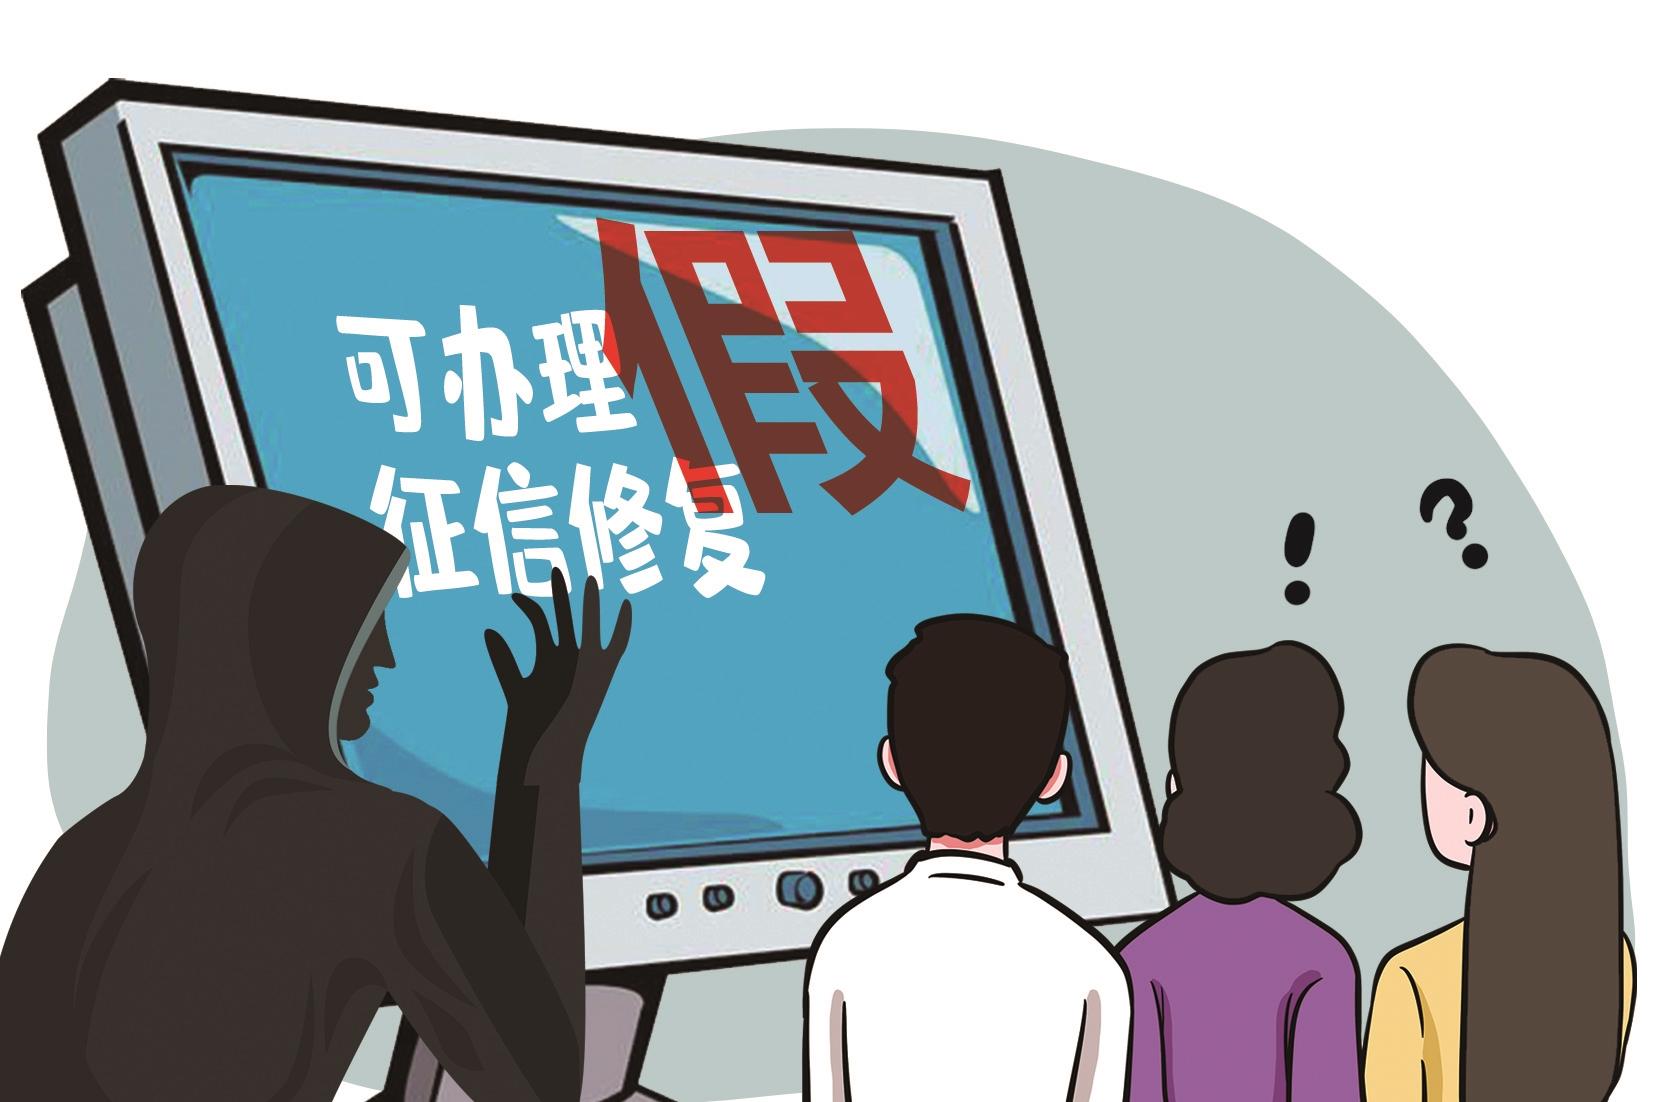 网传5月1日起征信可以修复 中国人民银行武汉分行：信息不实谨防上当受骗